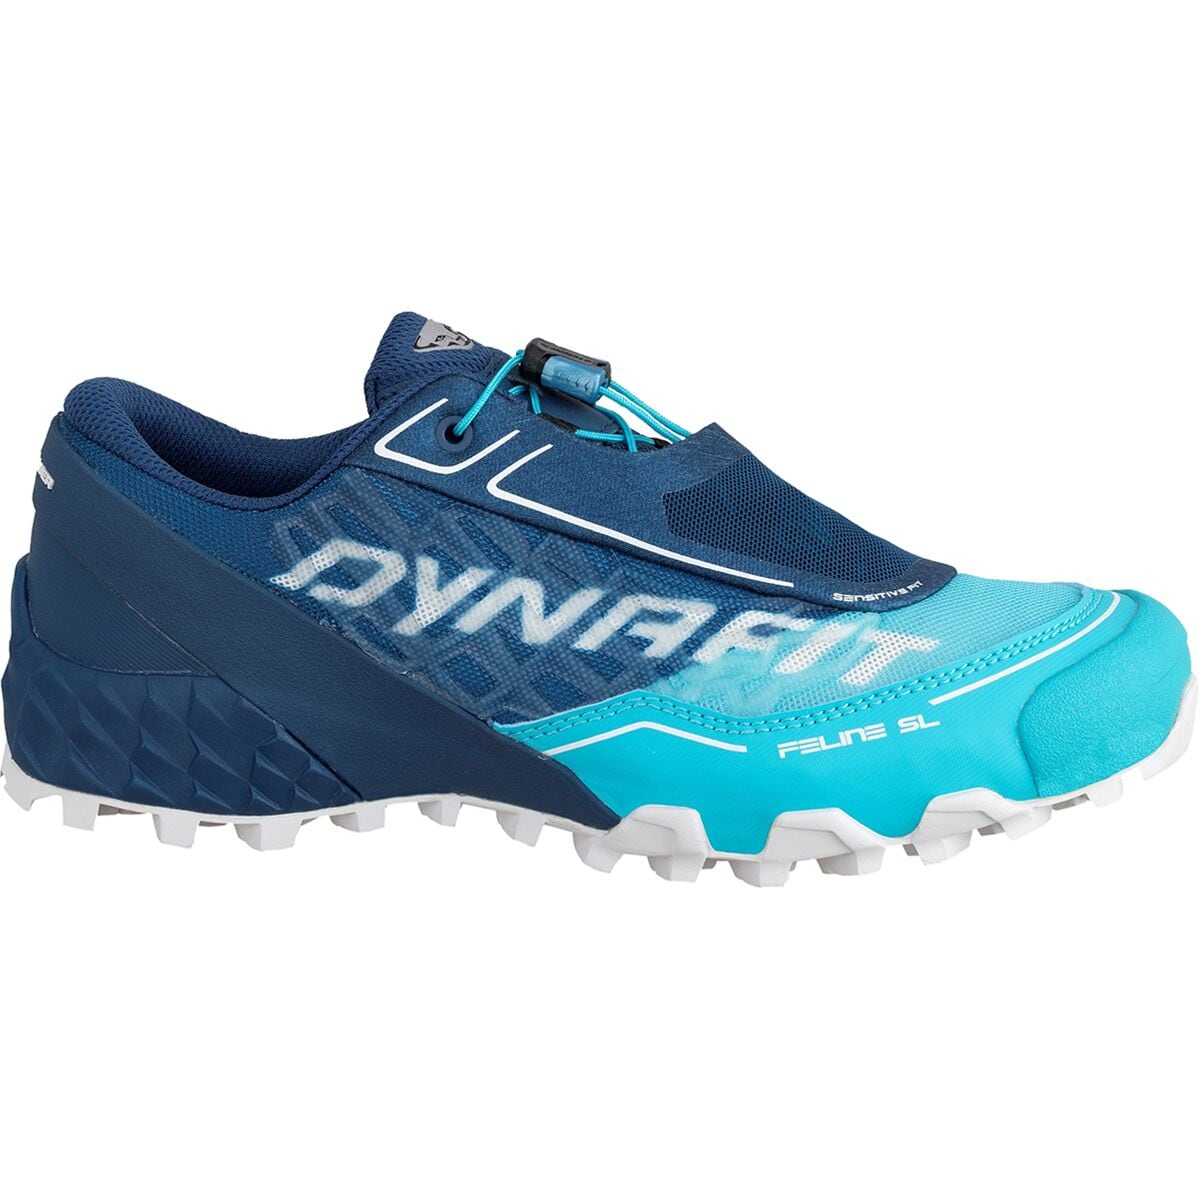 Dynafit Feline SL Trail Running Shoe - Women's